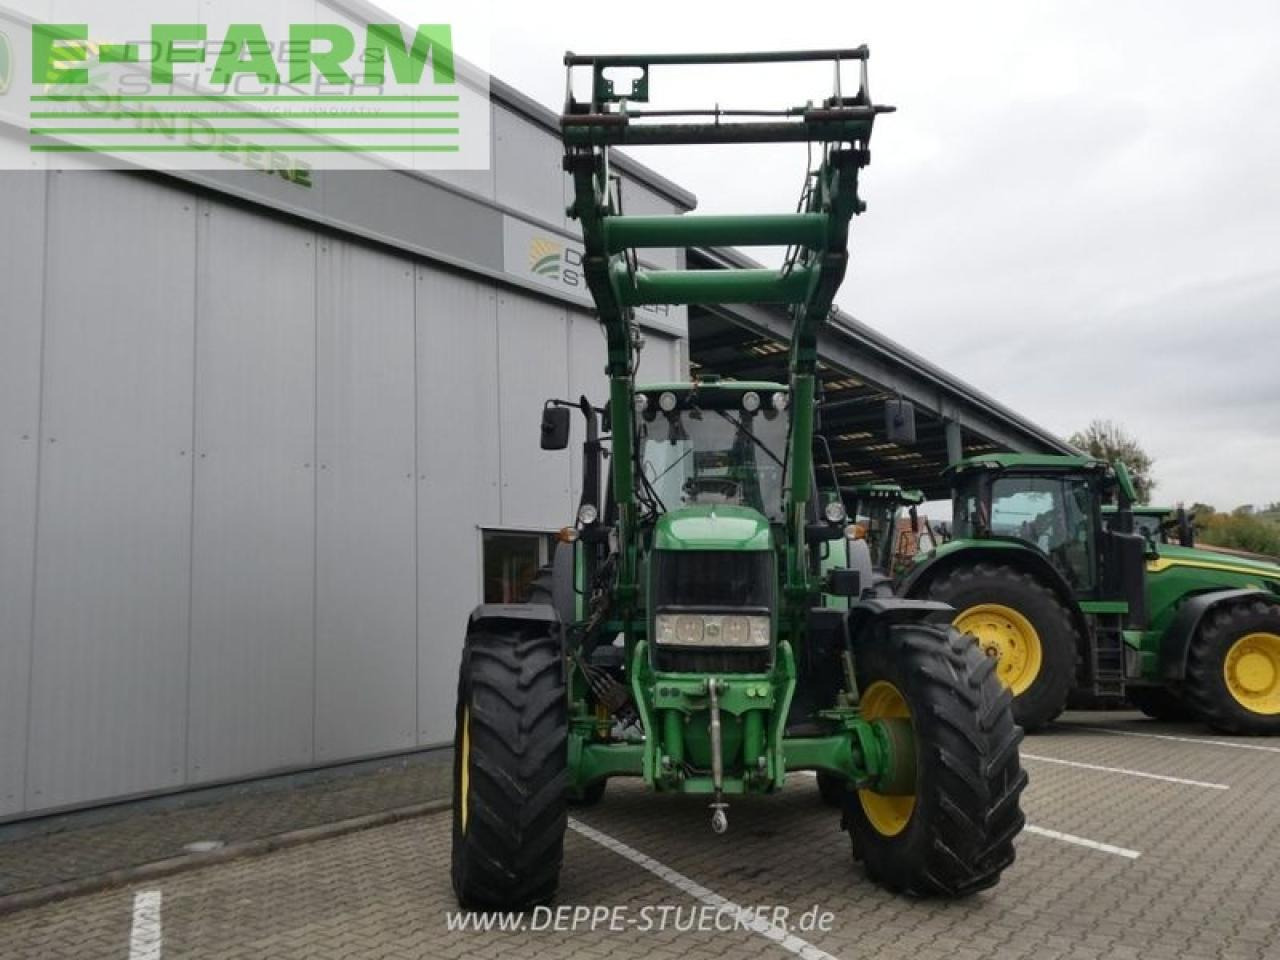 Farm tractor John Deere 7530 premium inkl. 751 frontlader: picture 3